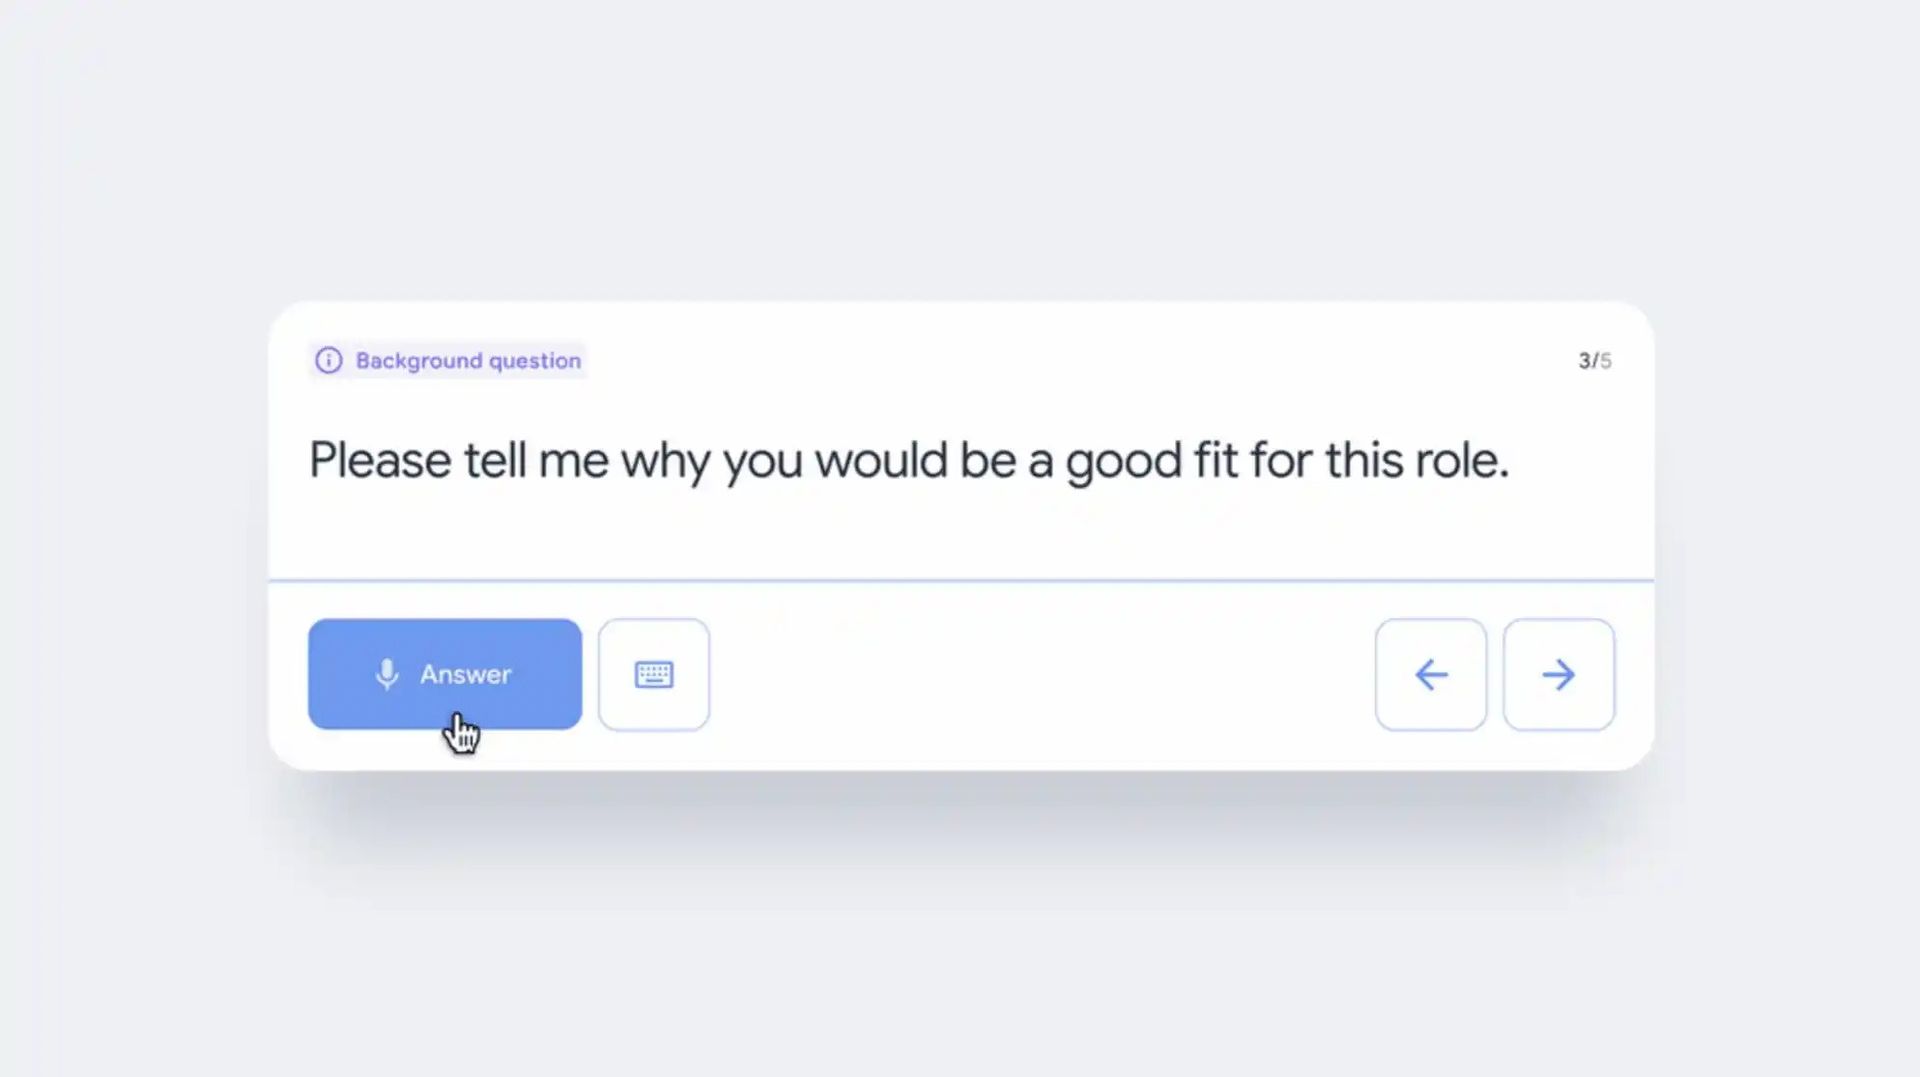 Hvis du føler dig nervøs før en jobsamtale, vil det nye AI-værktøj kaldet Google Interview Warmup hjælpe dig med at øve dig på forhånd.  Google har nu et værktøj til at hjælpe kandidater med at praktisere jobsamtaler.  Det er rigtigt, at jobsamtaler kan være stressende.  Du kan øve dig og være mere forberedt, før du går til et interview takket være Googles nye værktøj.